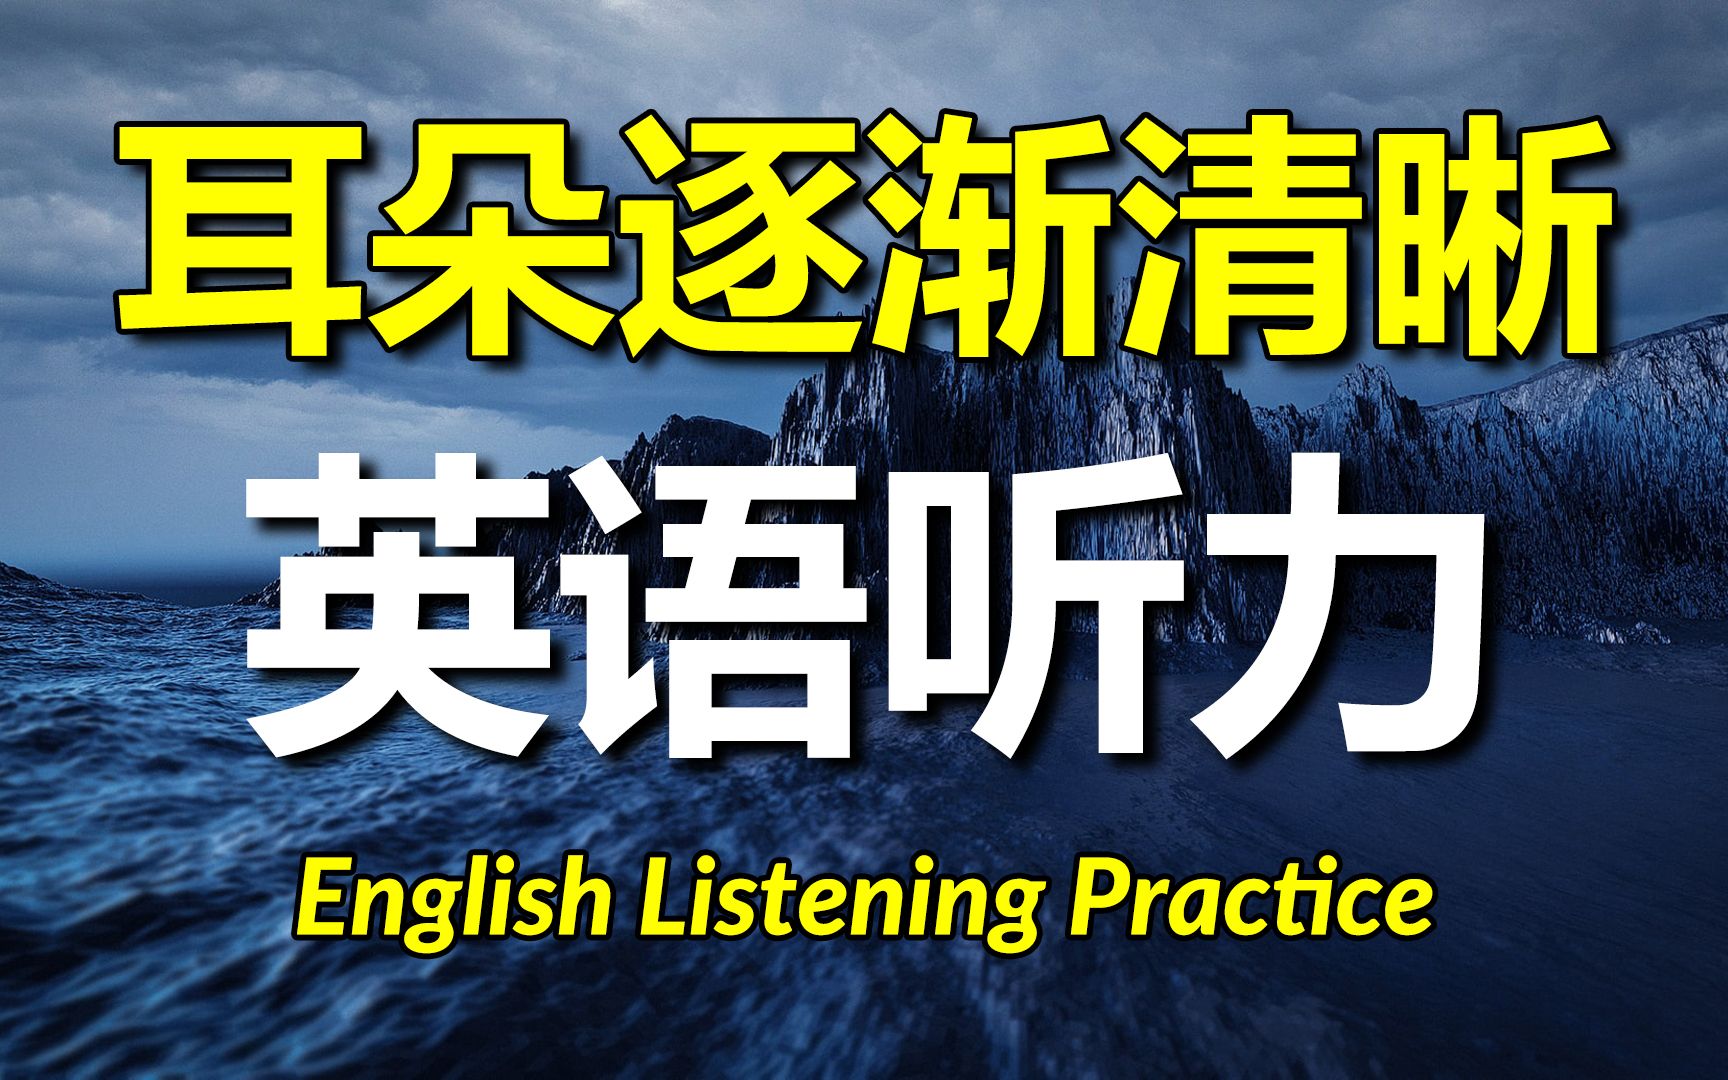 让耳朵逐渐清晰的英语听力，高效提升听力技能